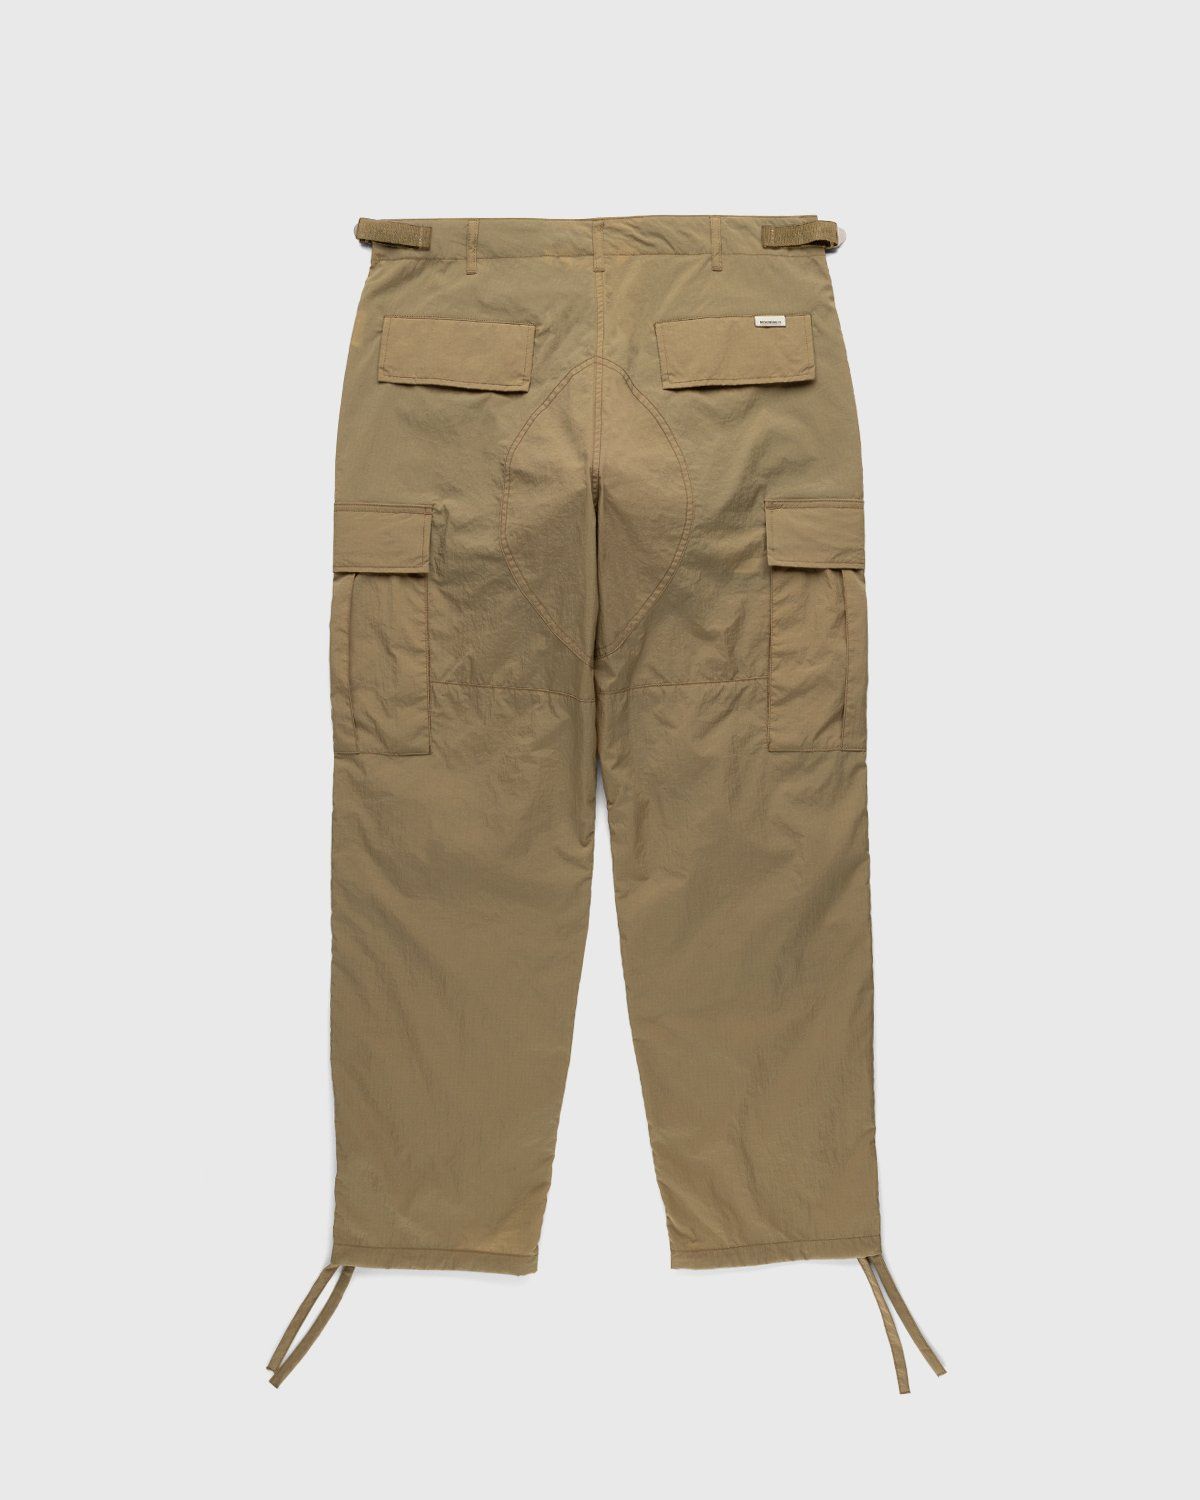 Highsnobiety – Water-Resistant Ripstop Cargo Pants Beige - Cargo Pants - Beige - Image 2